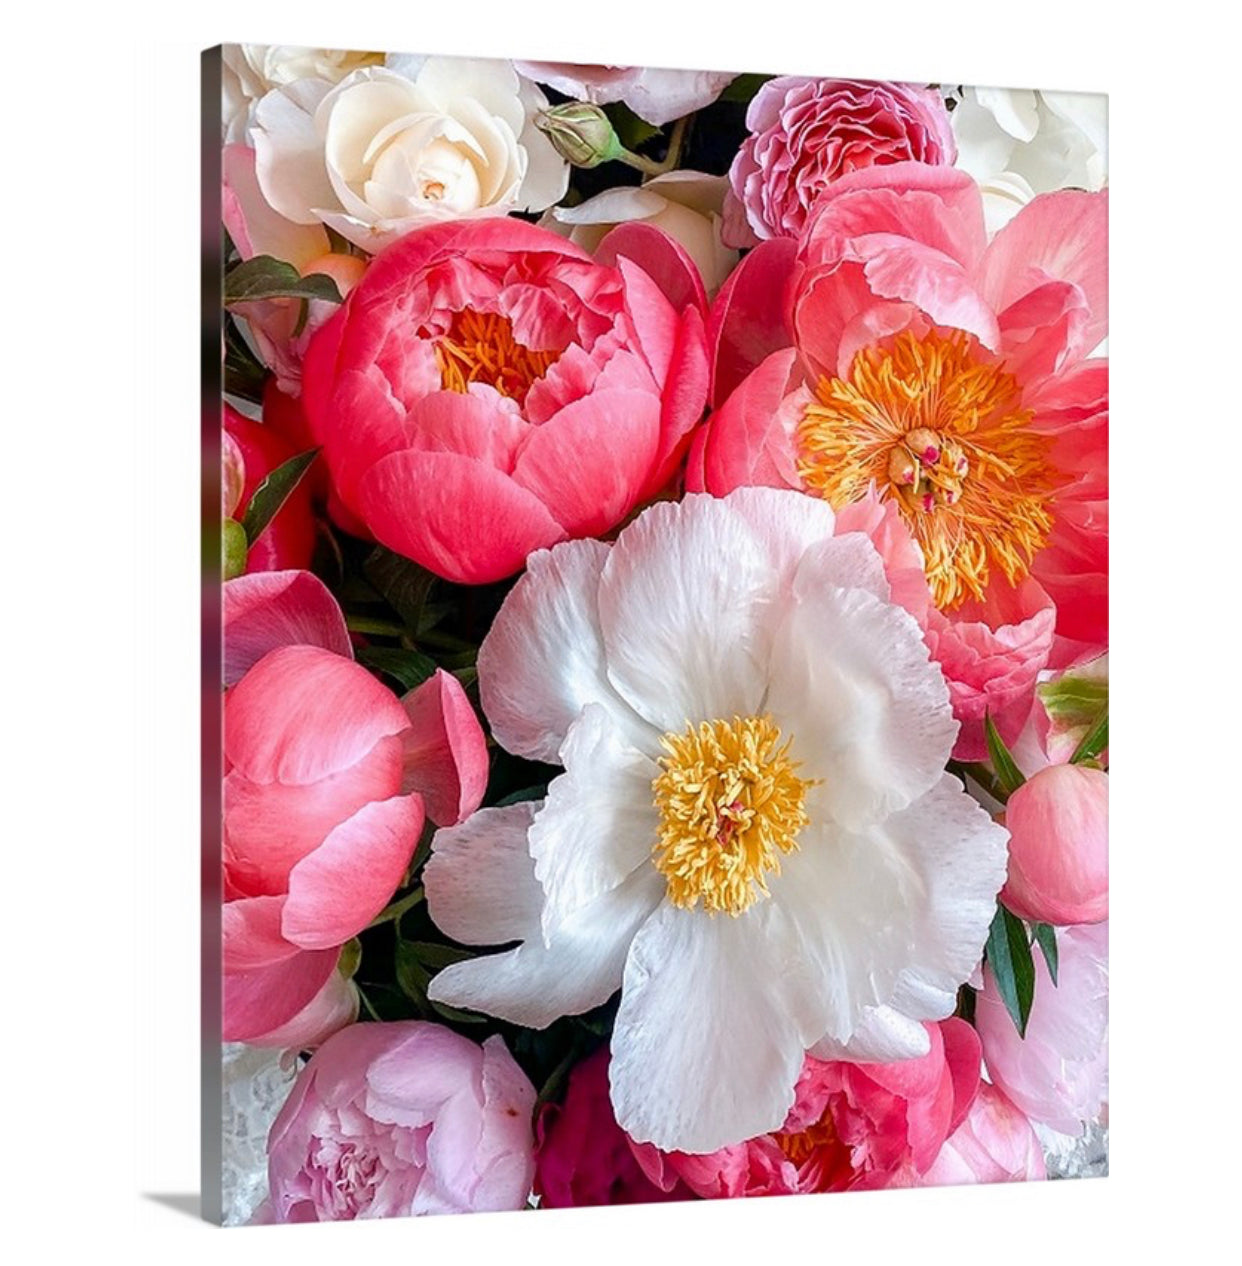 Lienzo envuelto en galería de peonías blancas y rosas